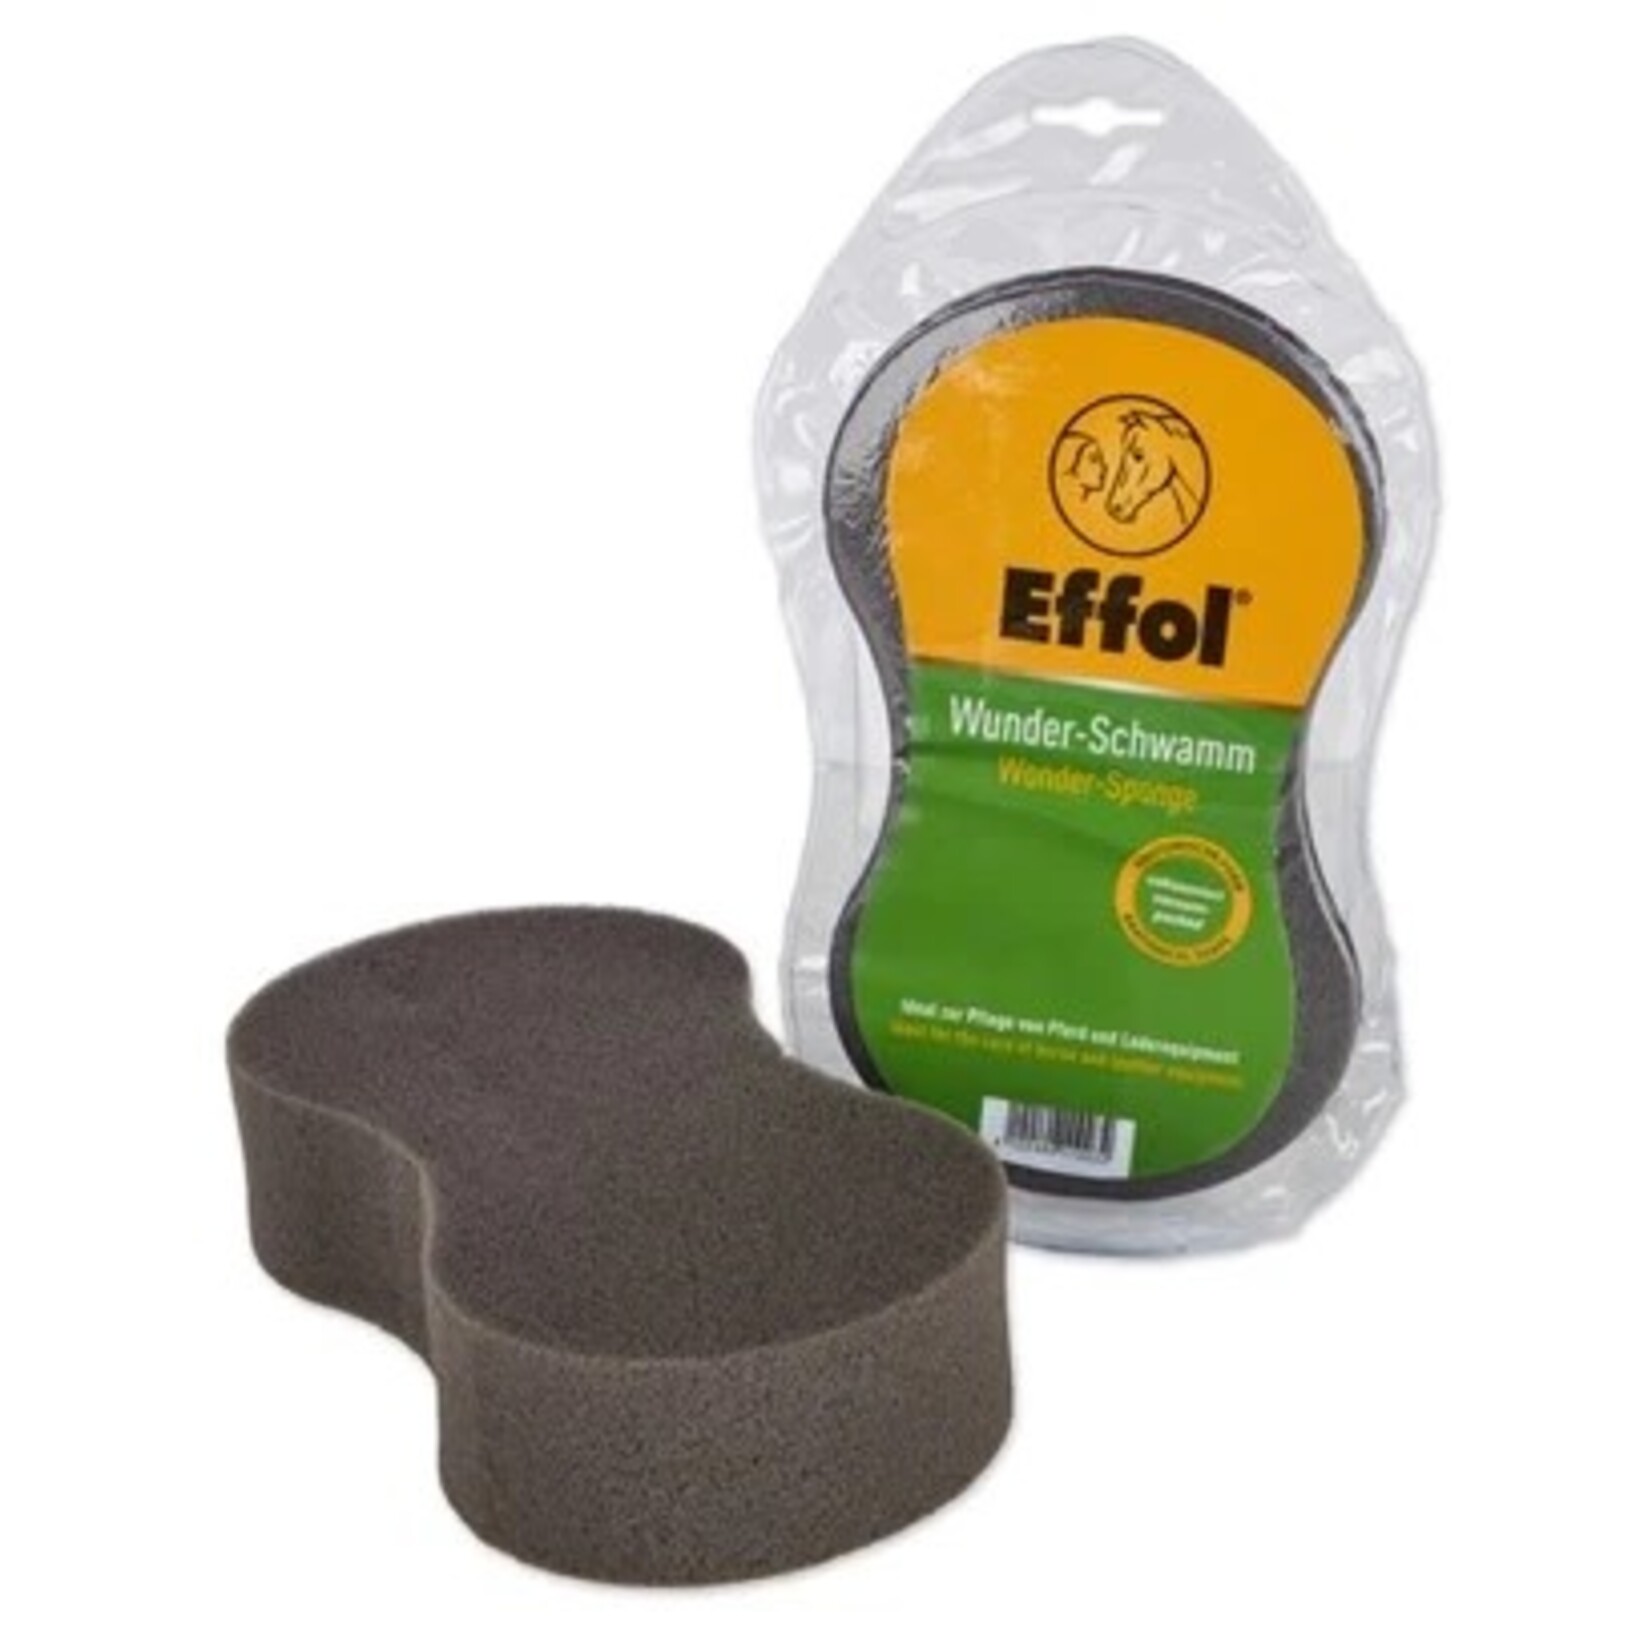 Effol/Effax Effol Wonder-Sponge